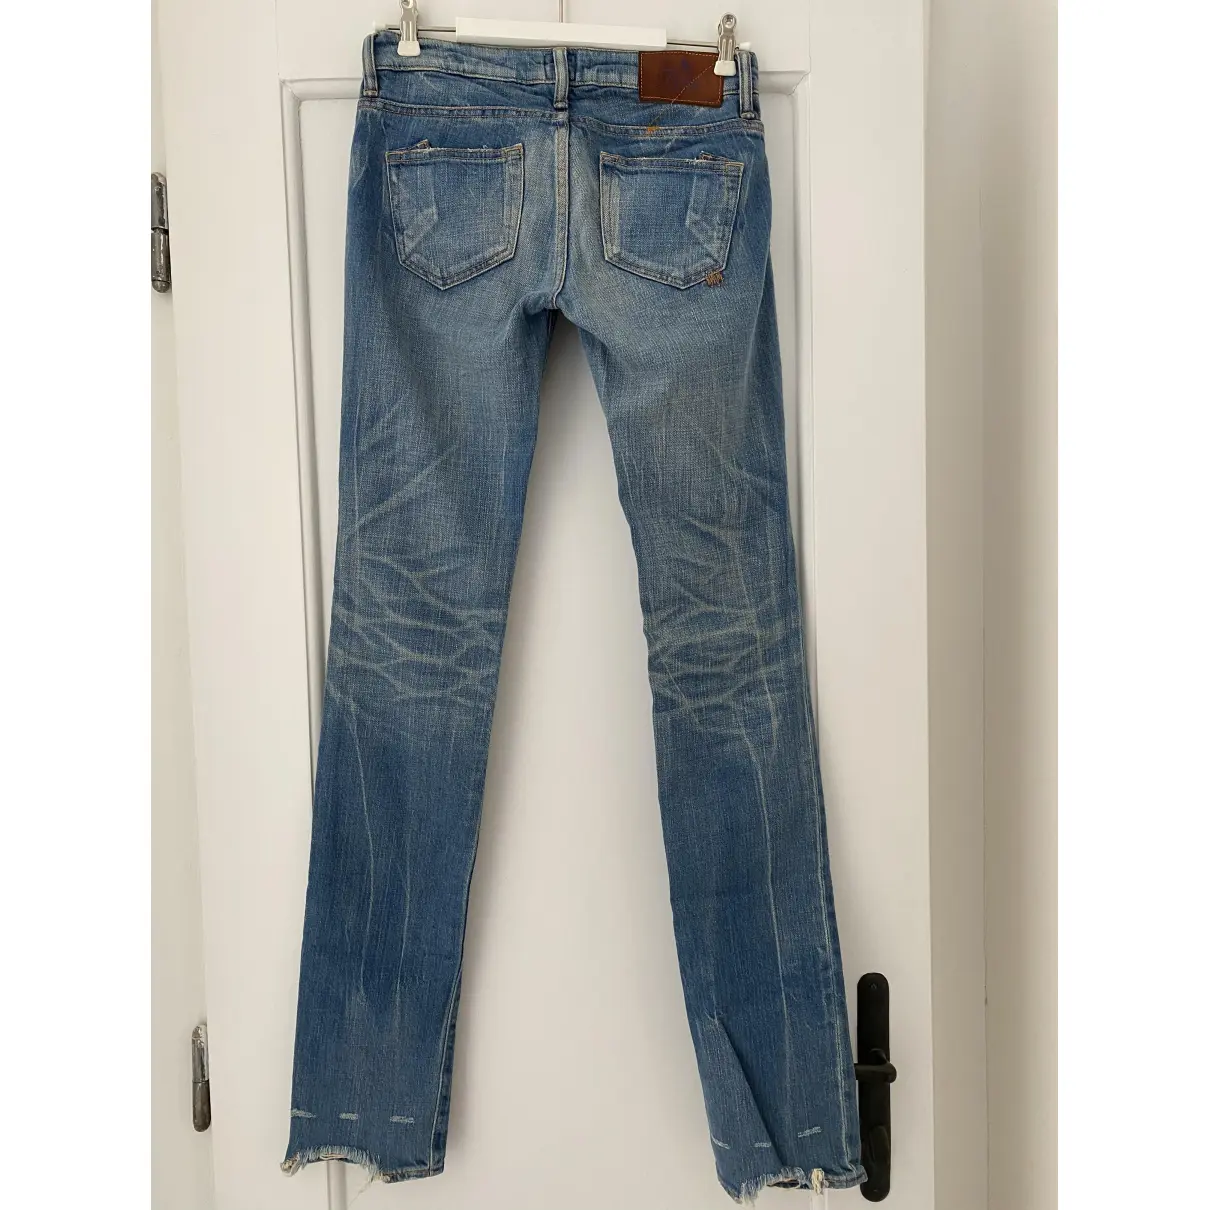 Buy Prps Blue Cotton Jeans online